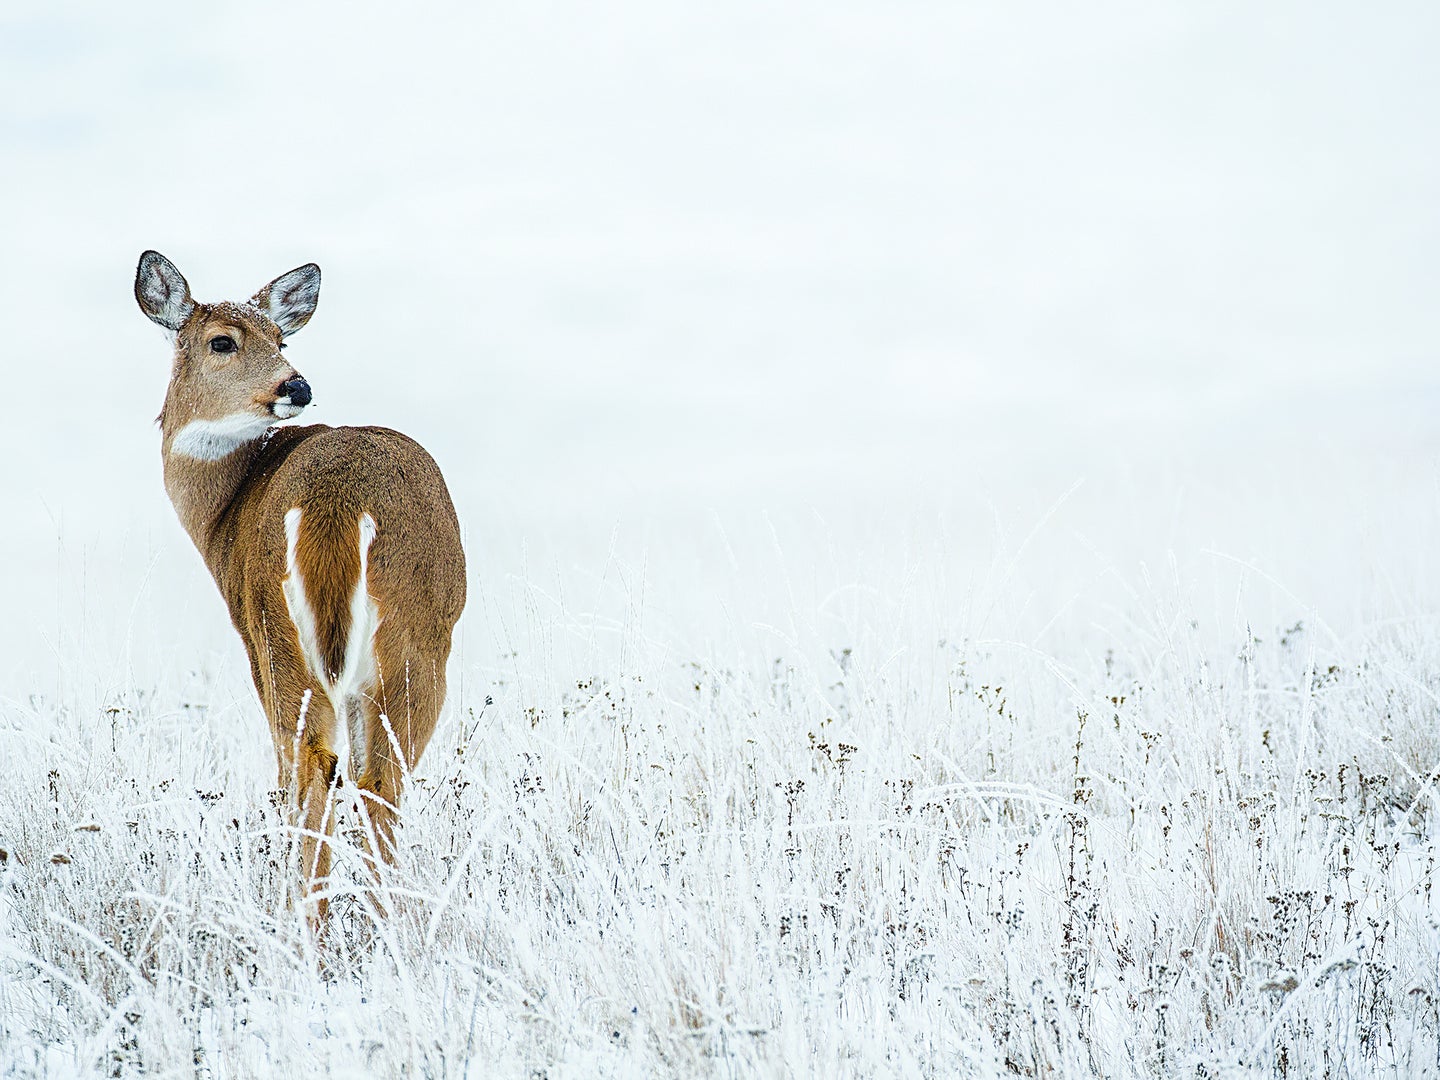 snowy field, doe looks over shoulder